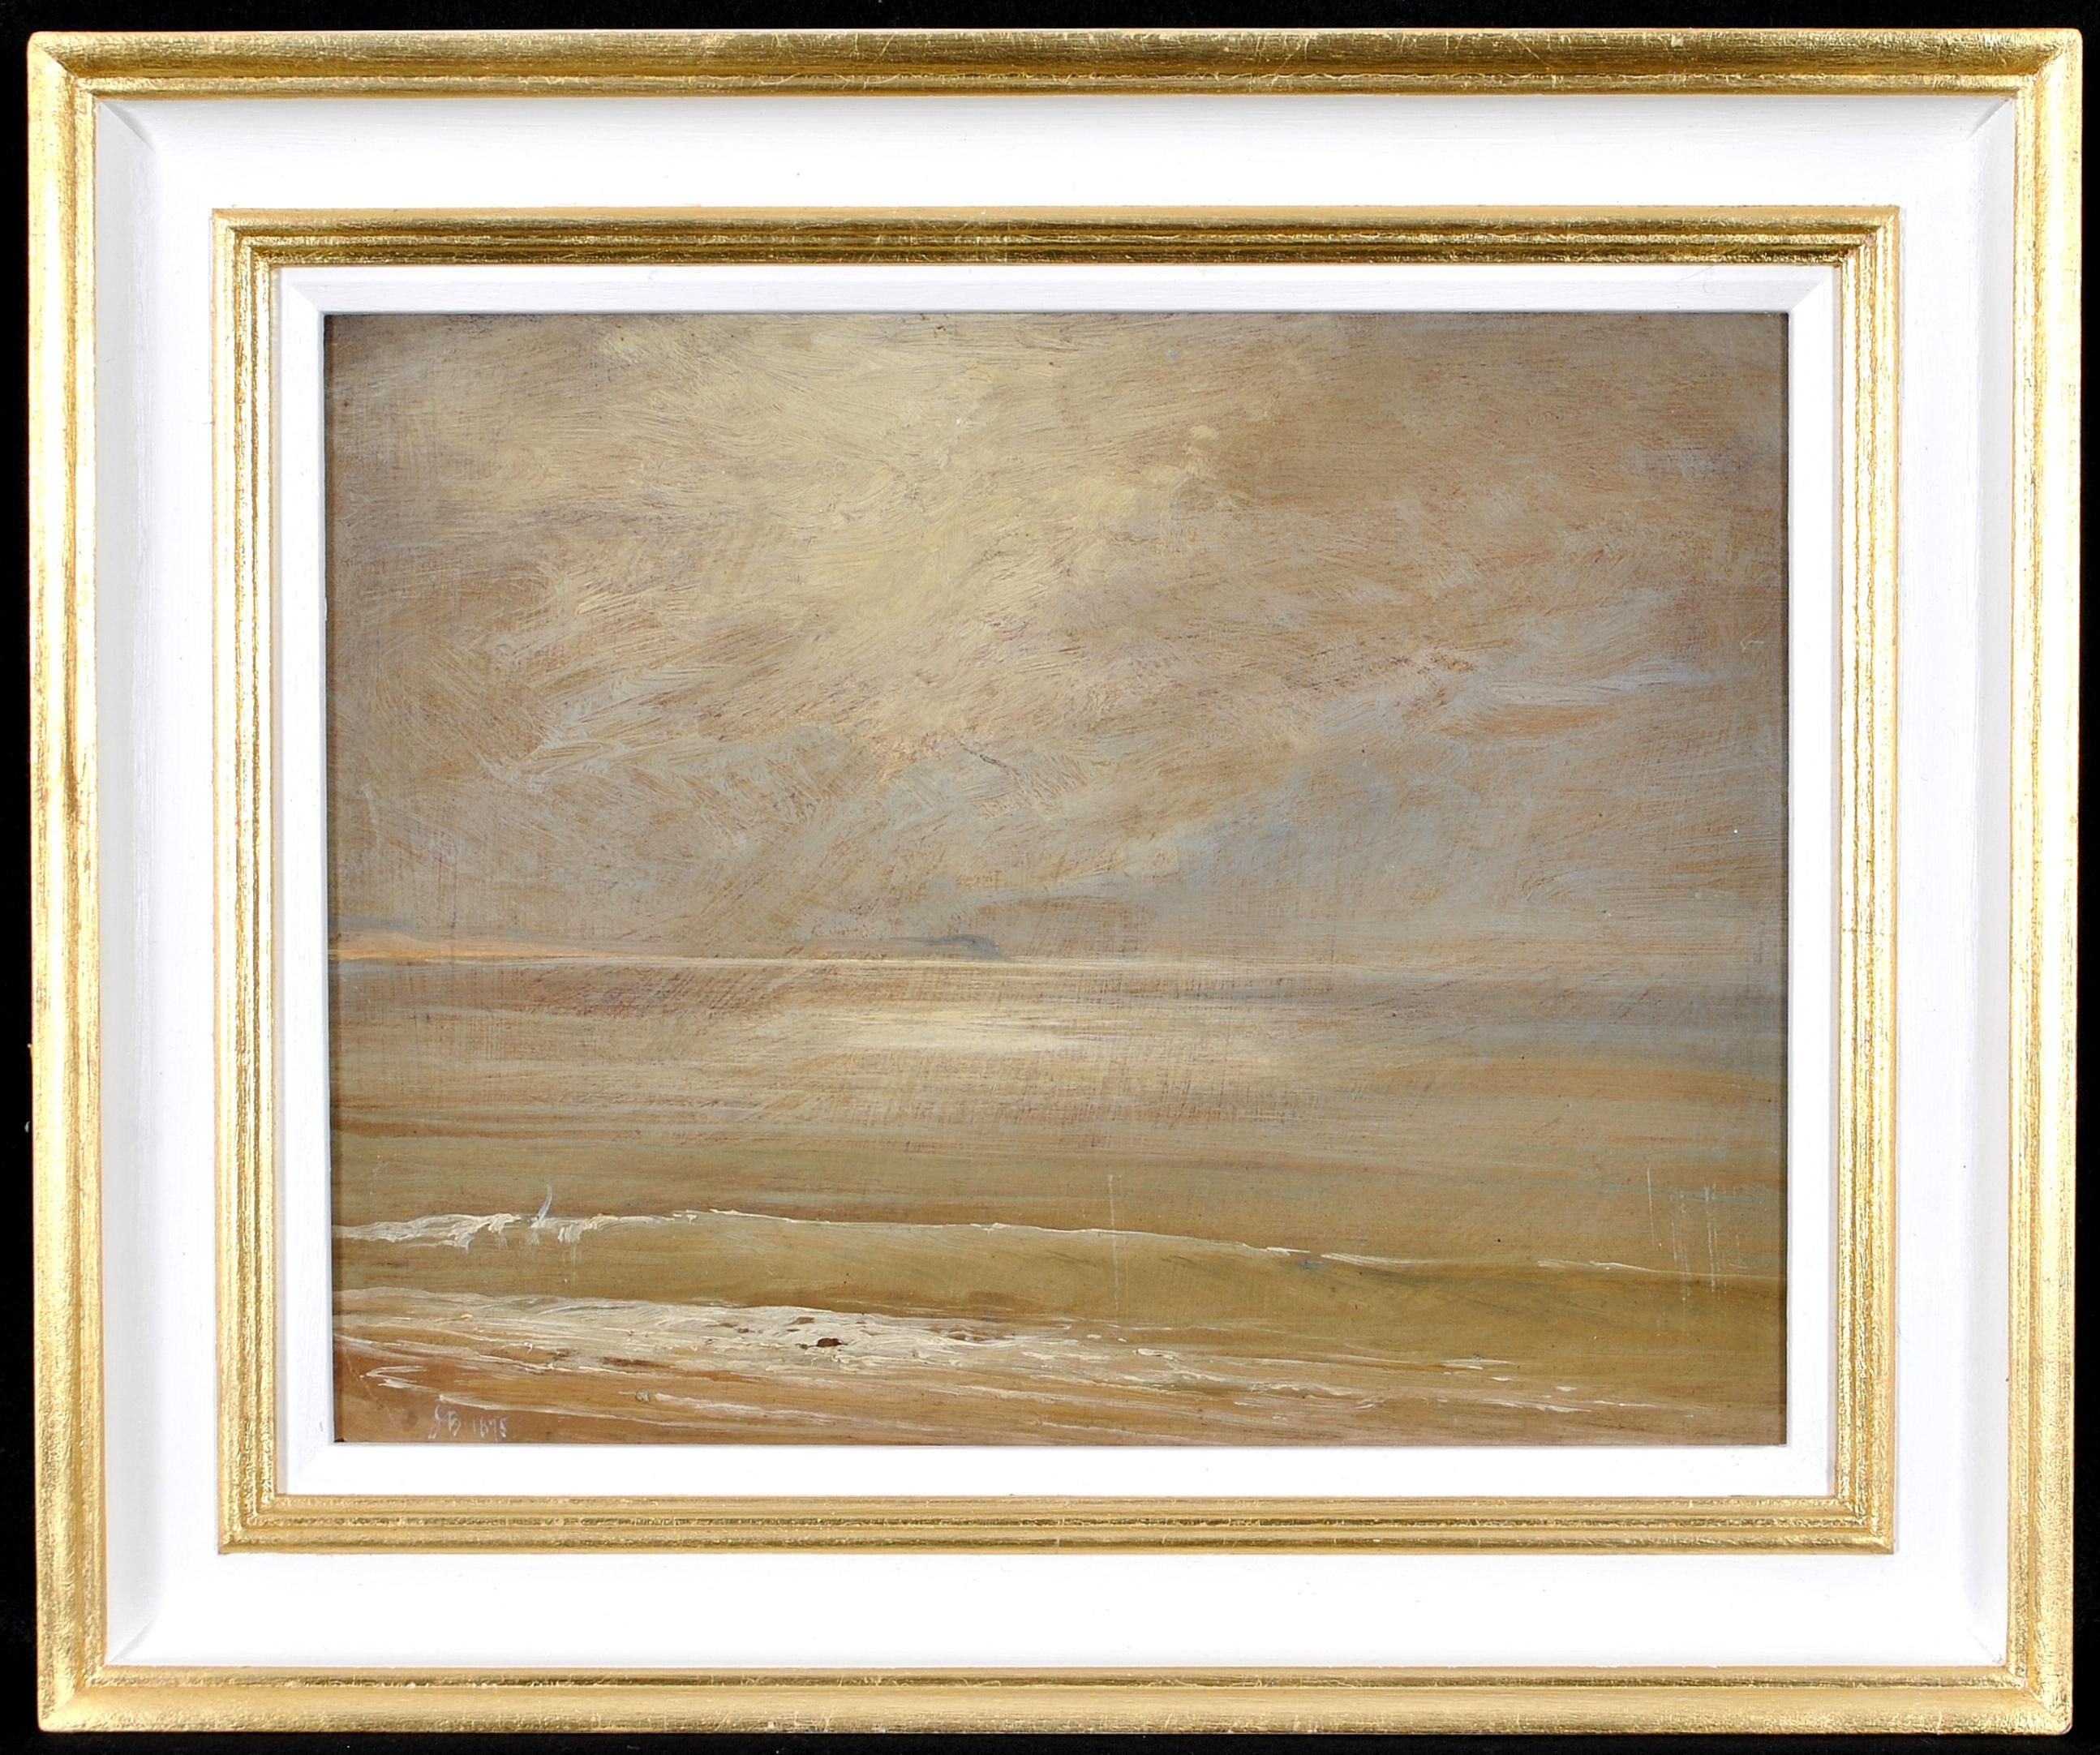 19th Century British School Landscape Painting - Seascape - 19th Century Impressionist Antique British Moonlit Sea Painting